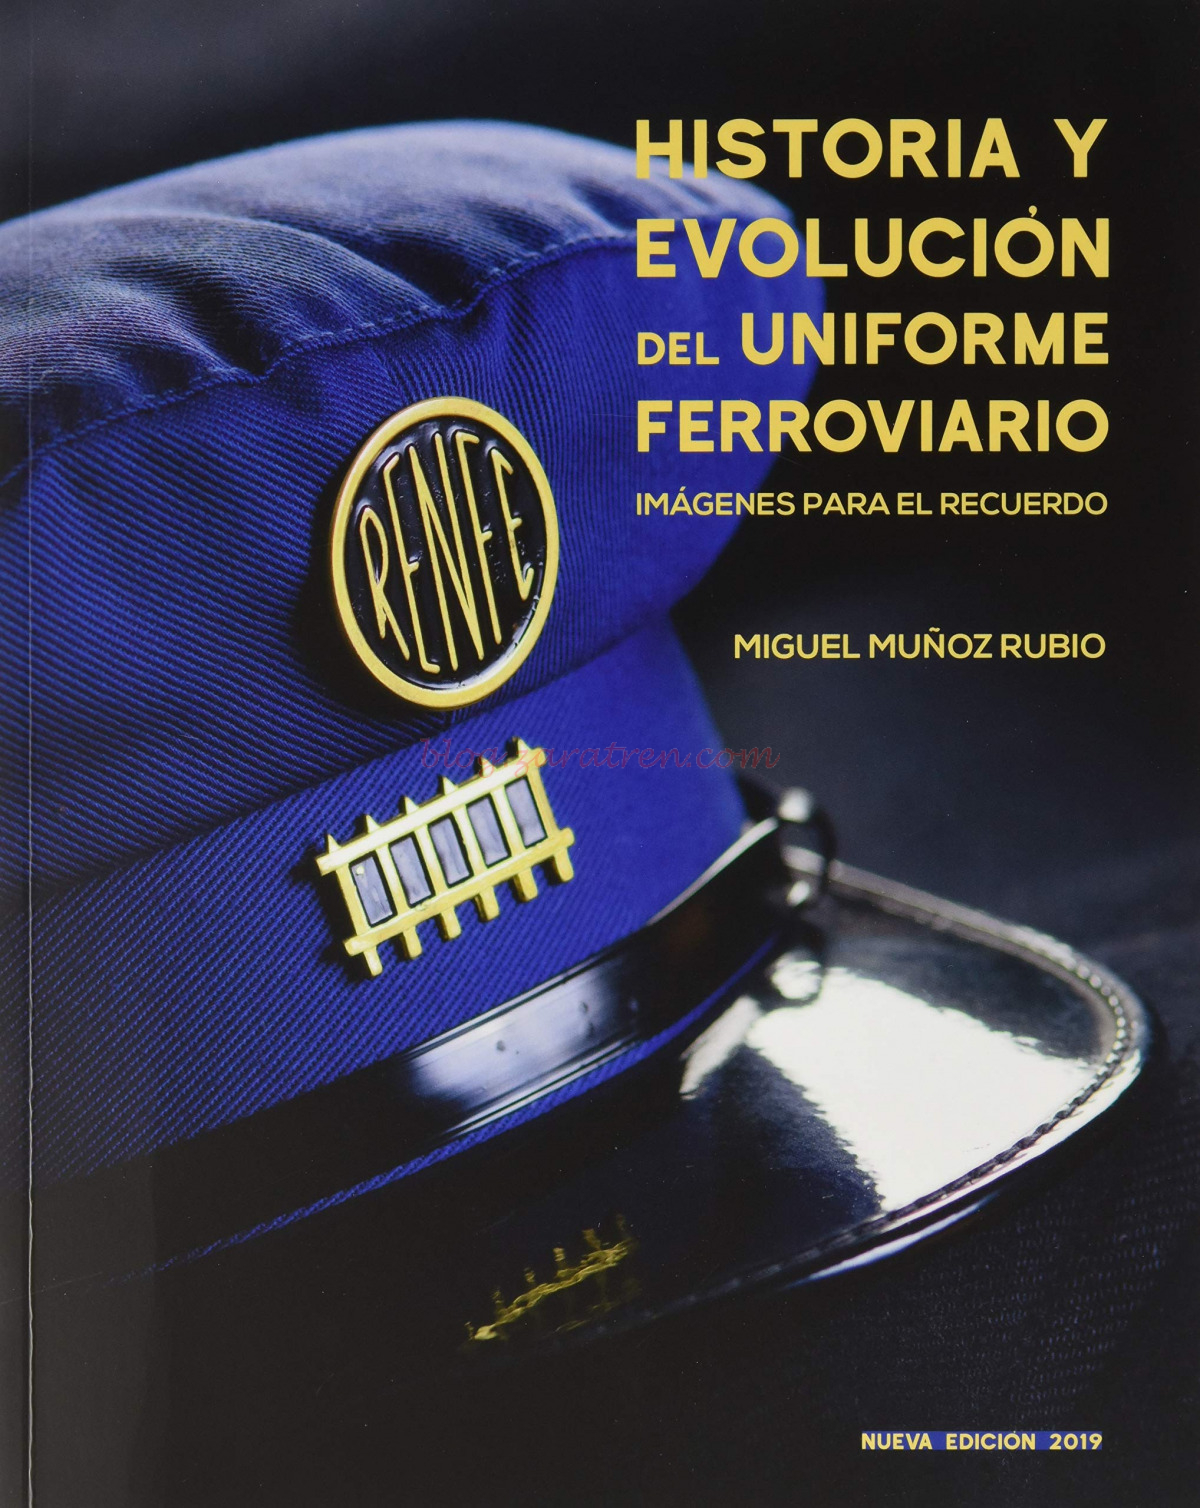 Historia y Evolución del Uniforme Ferroviario, Miguel Muñoz Rubio